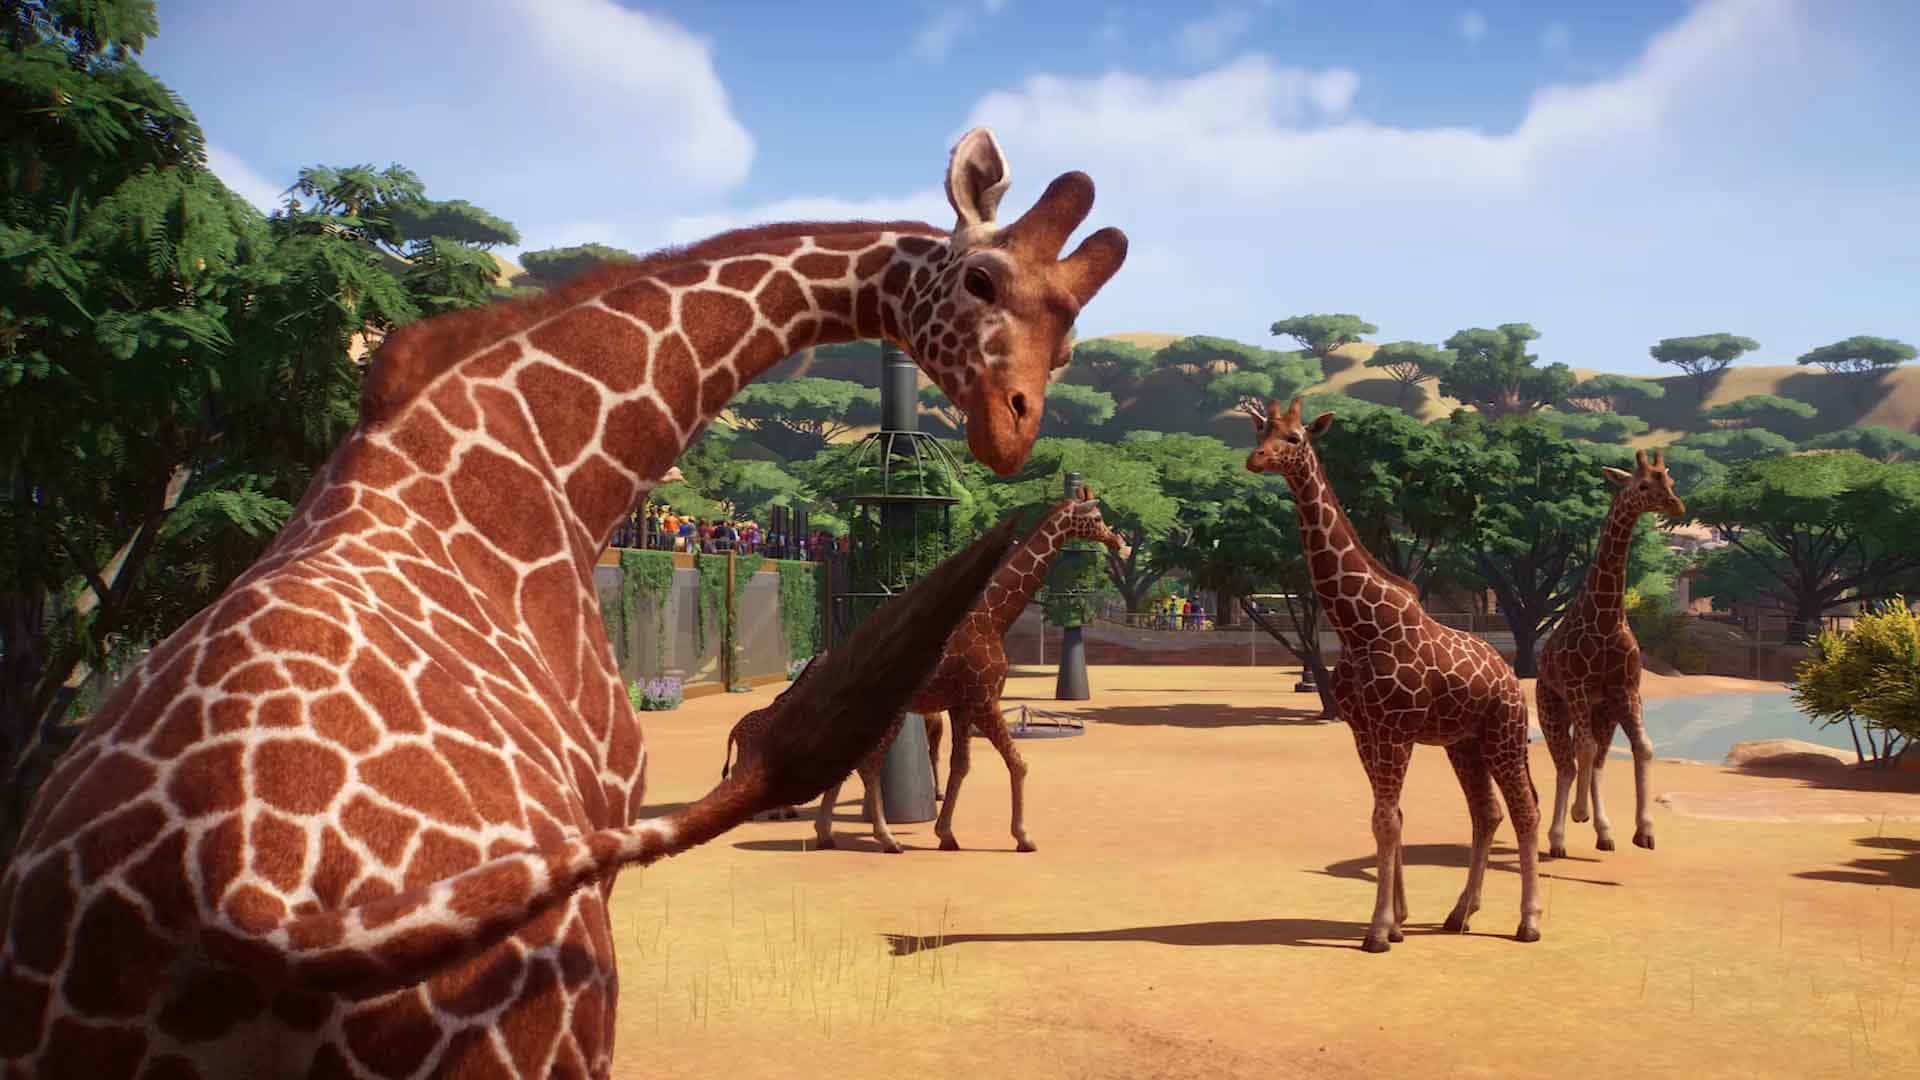 L'Africa offre di gran lunga la più grande selezione di animali esotici possibili e la giraffa è un classico dello zoo